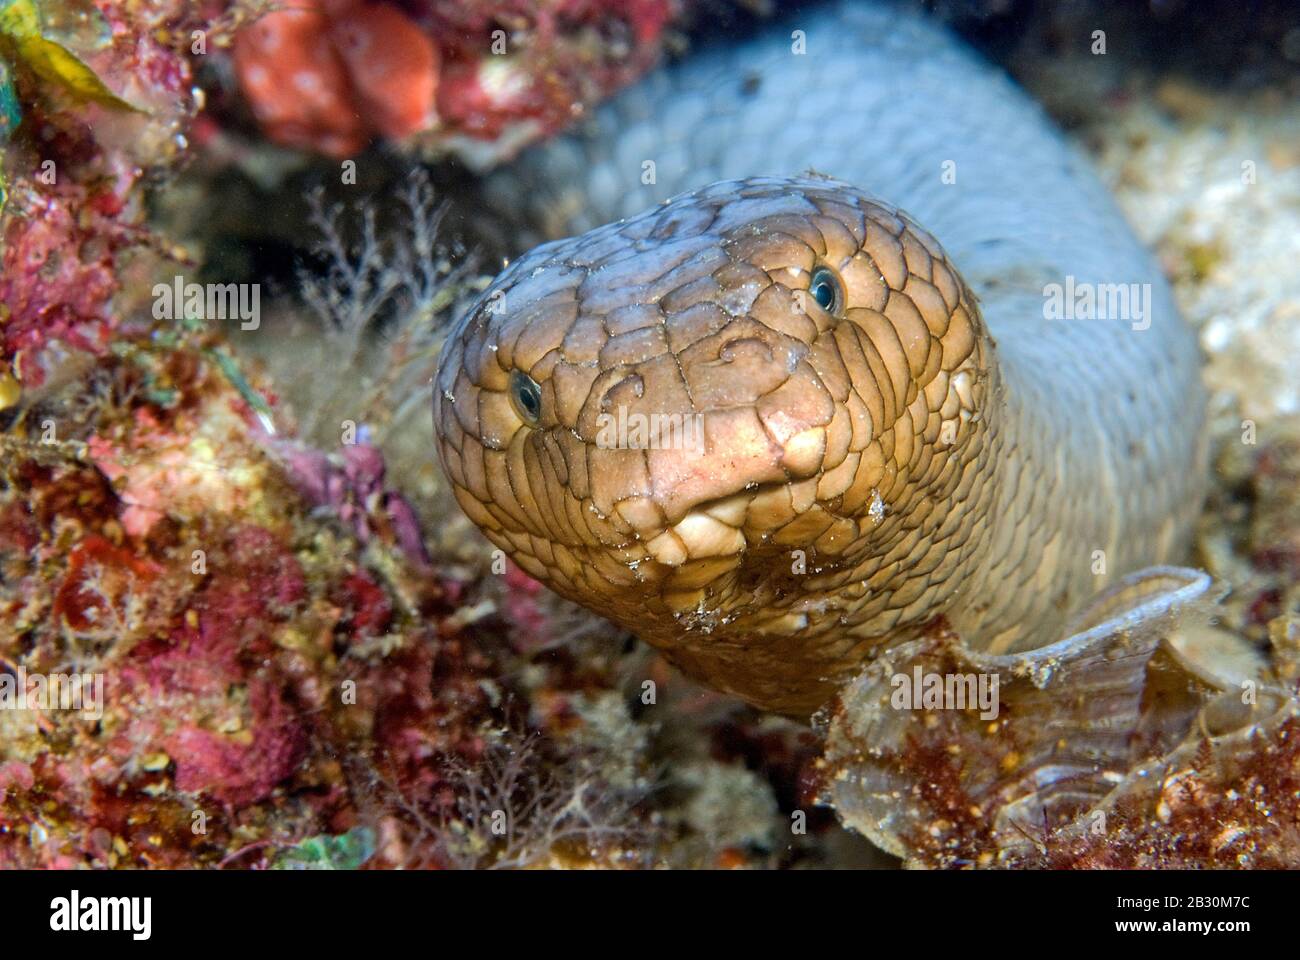 Serpiente de mar de oliva o serpiente de mar de oro (Aipysurus laevis), extremadamente venenosa, Papúa Nueva Guinea Foto de stock